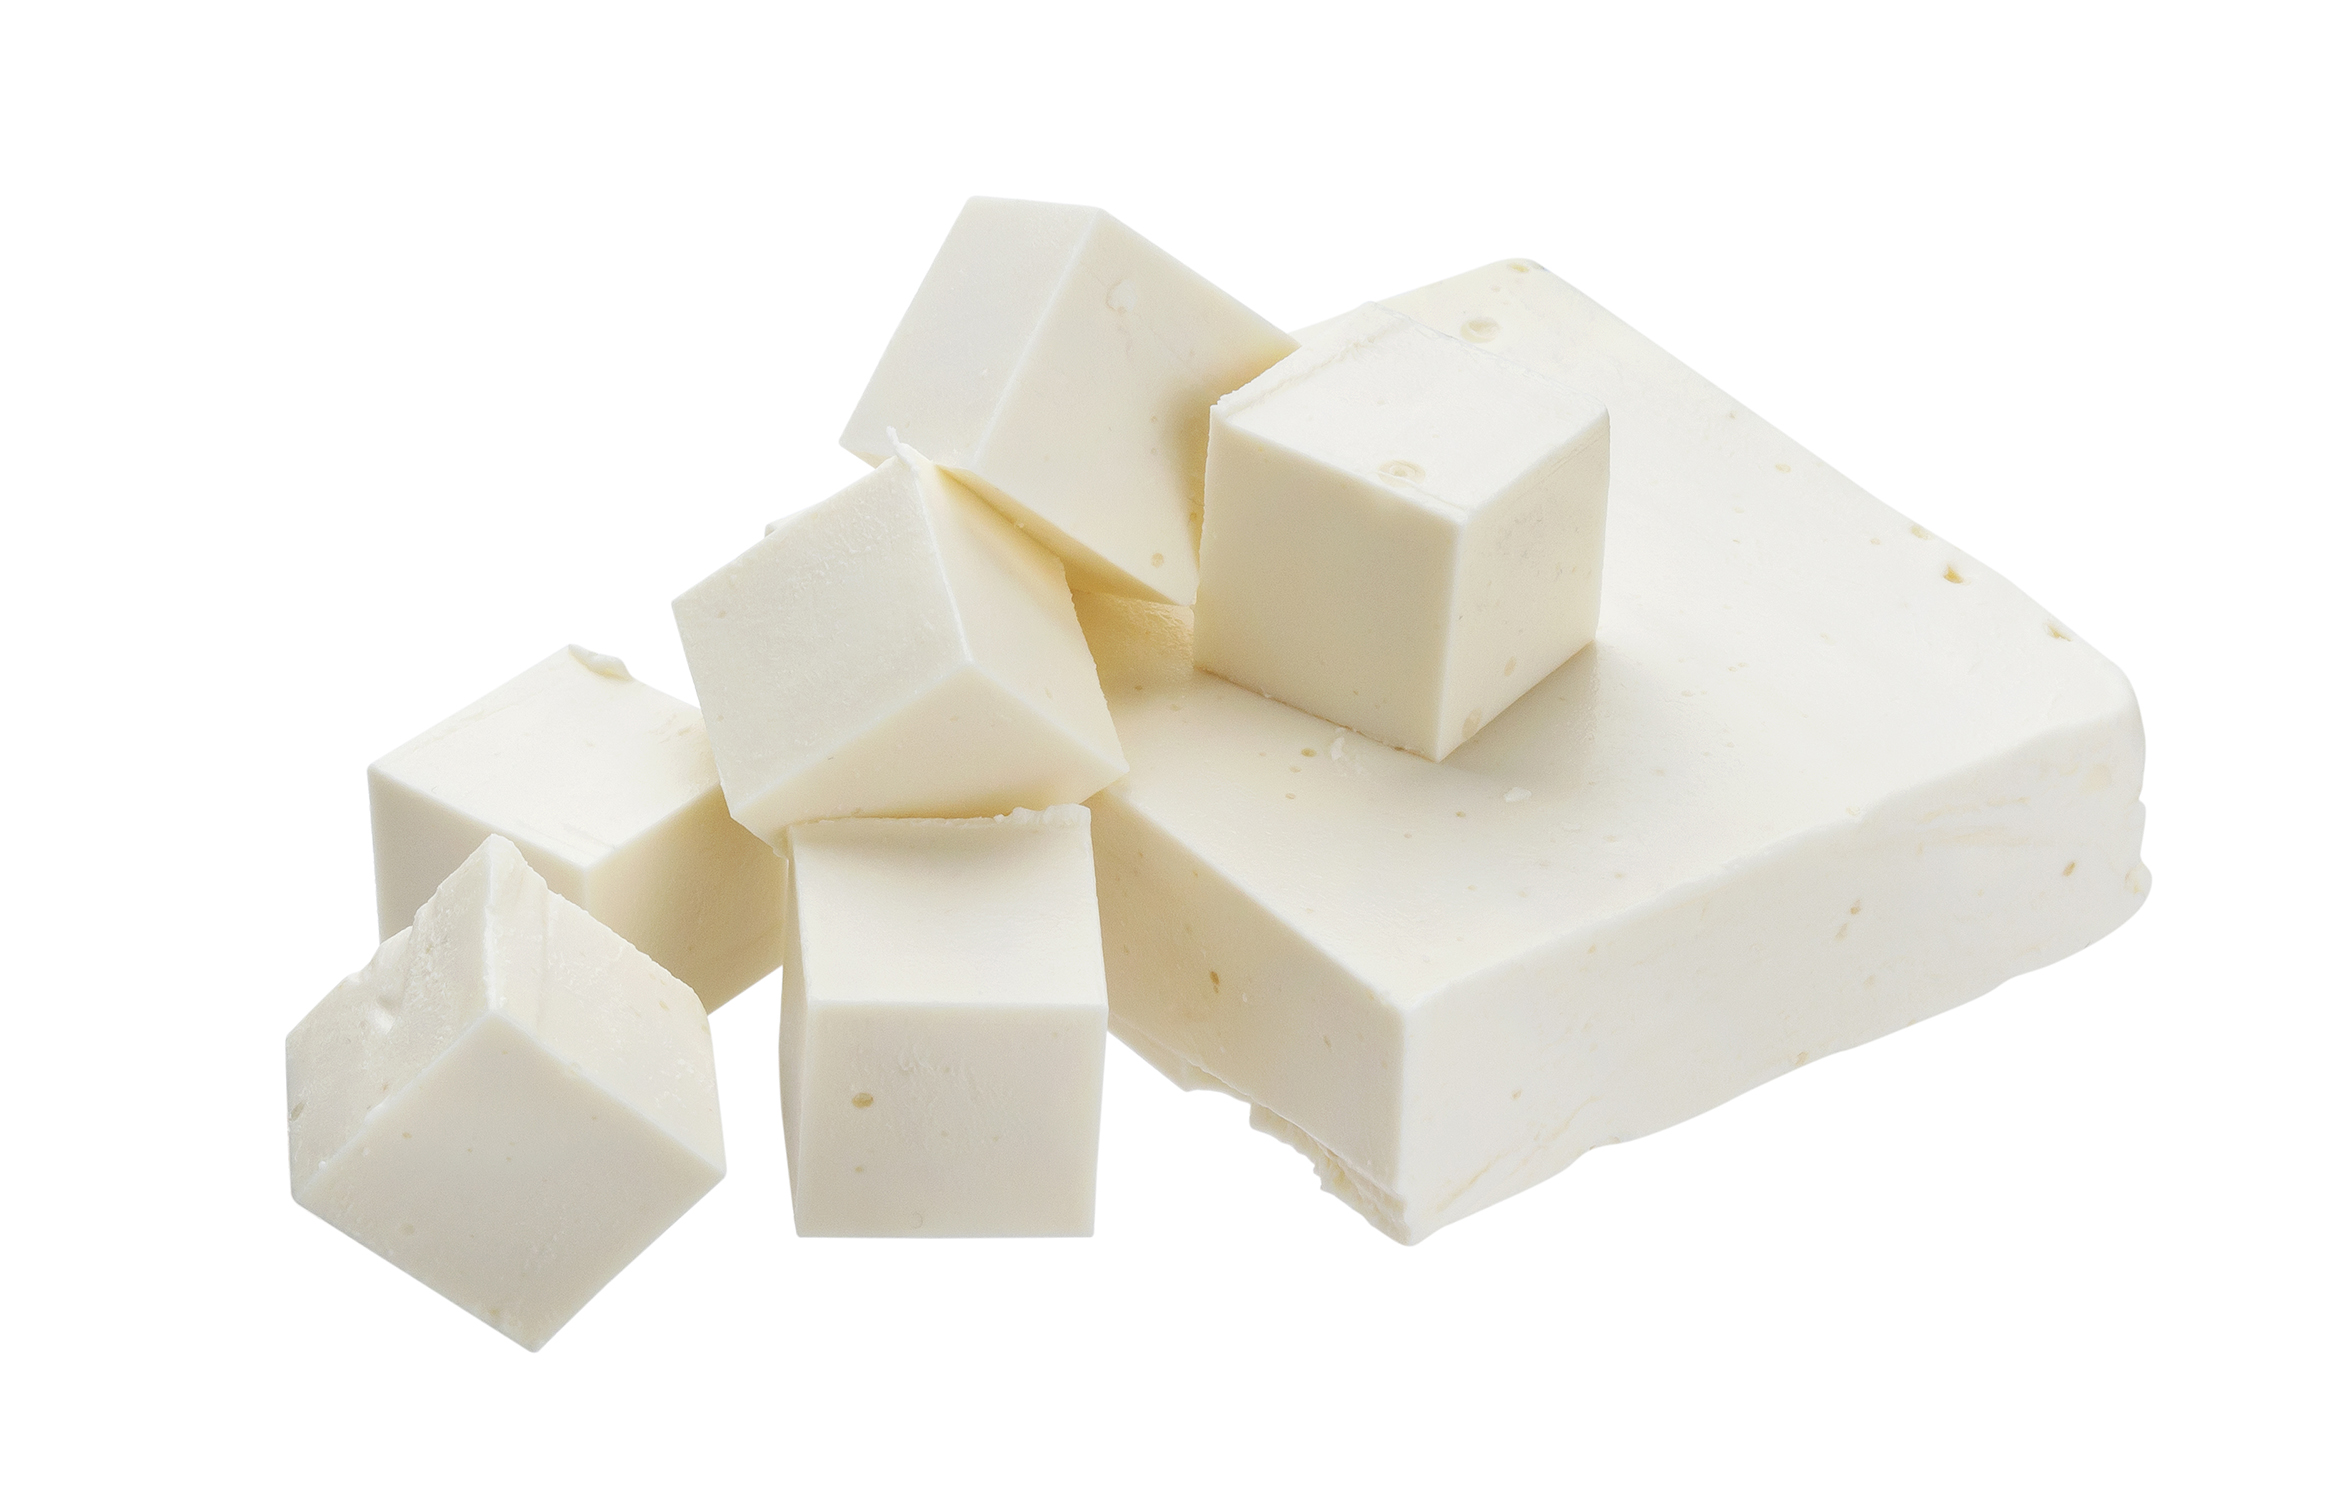 Λευκό τυρί